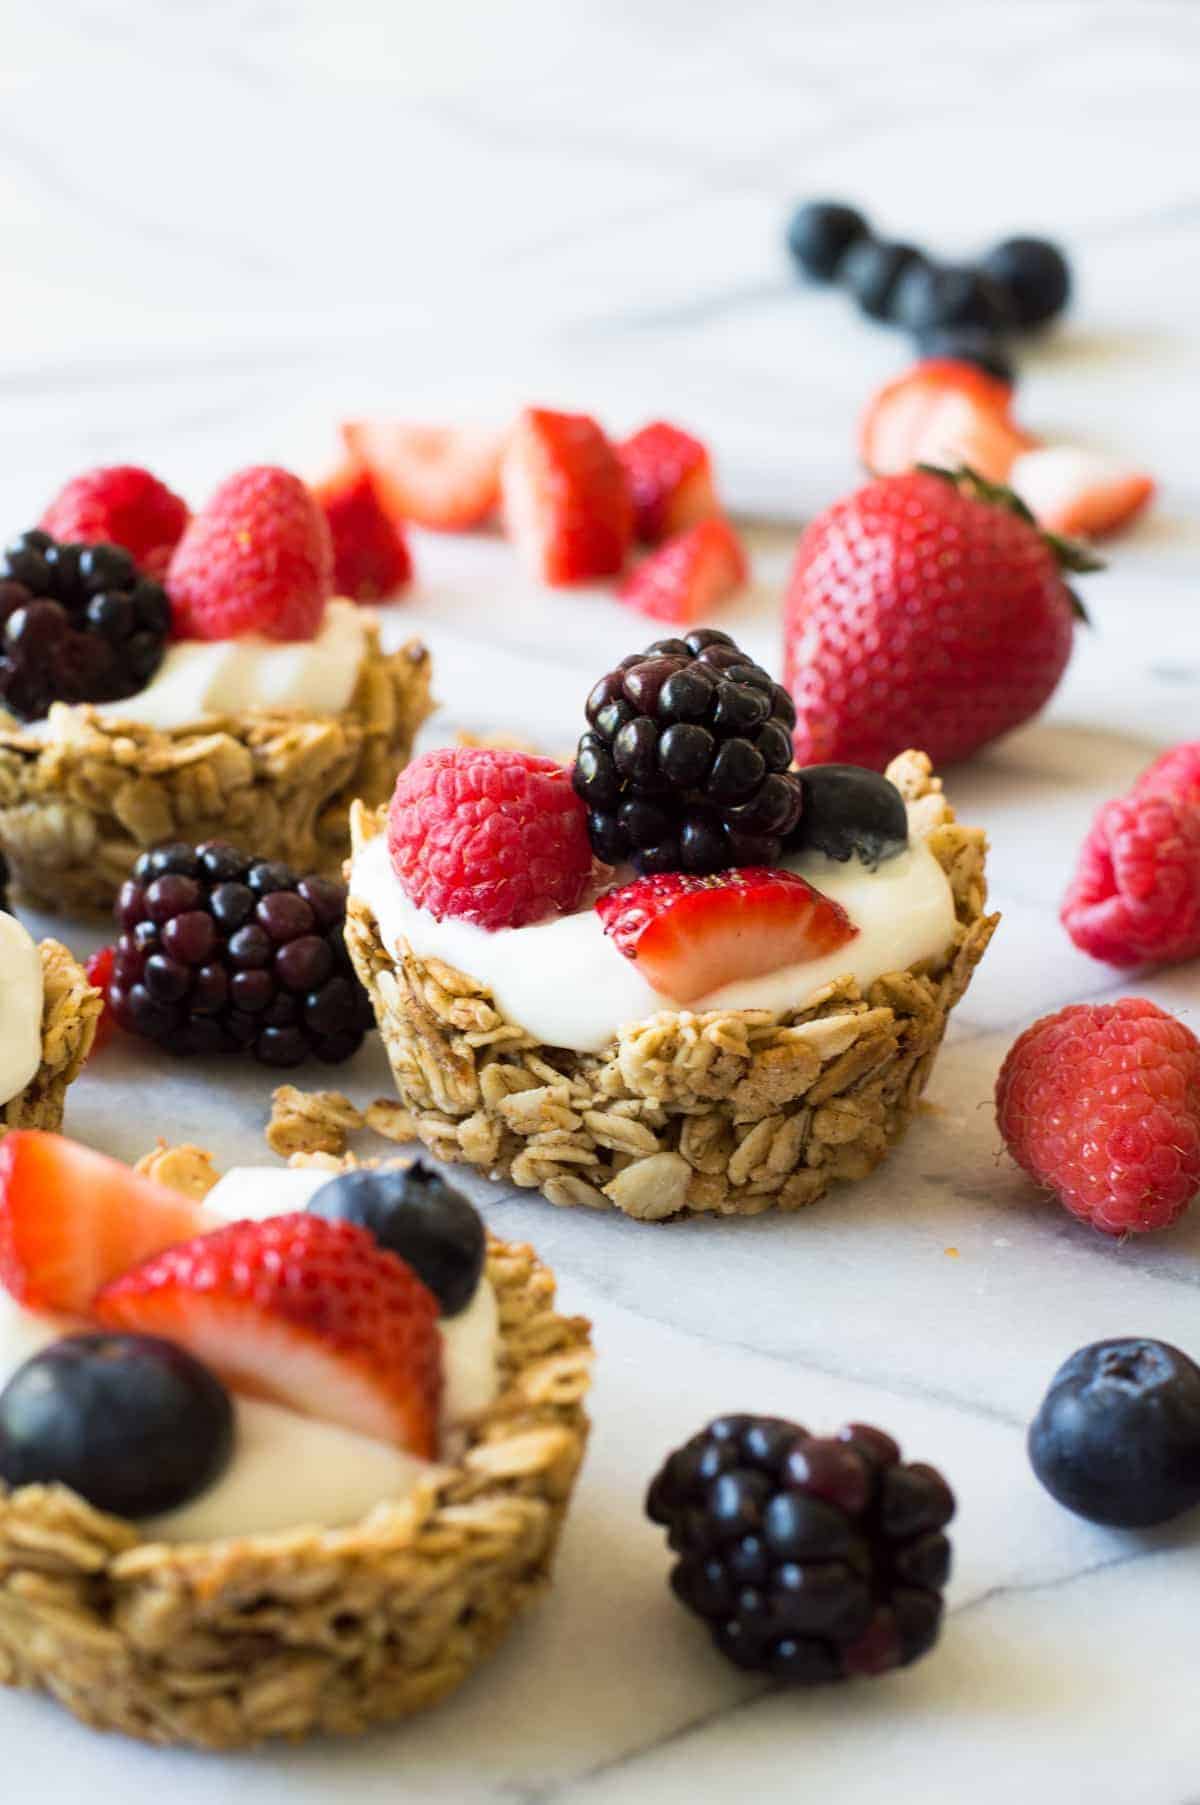 Ces coupes de granola aux fruits et au yogourt sont super faciles à préparer pour le petit déjeuner ! Remplissez-les de votre yogourt préféré et de fruits frais pour un repas sain et complet !